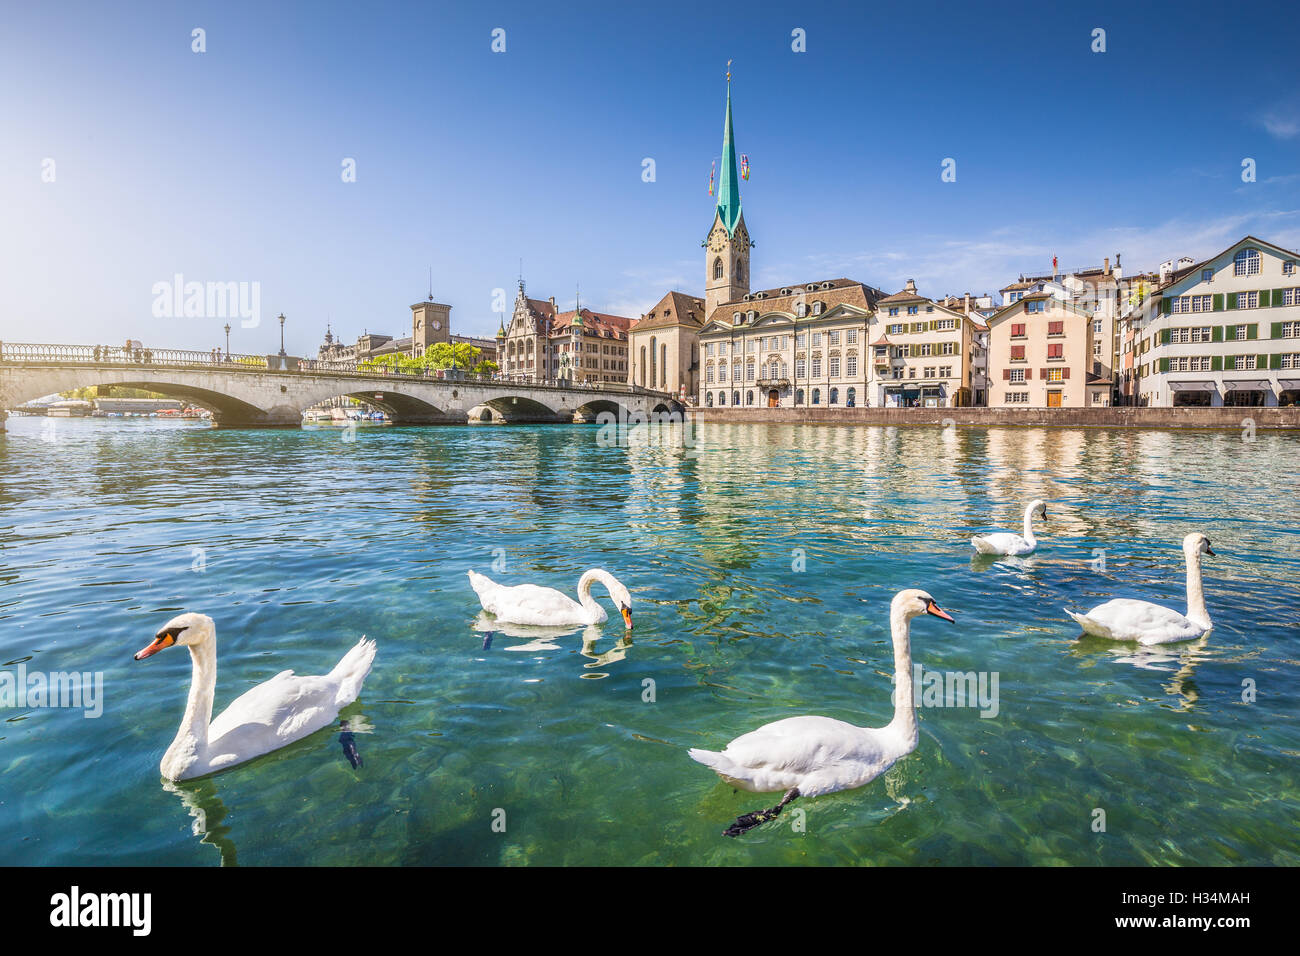 Centro histórico de la ciudad de Zurich con la famosa iglesia Fraumunster y cisnes en el río Limmat, Cantón de Zurich, Suiza Foto de stock